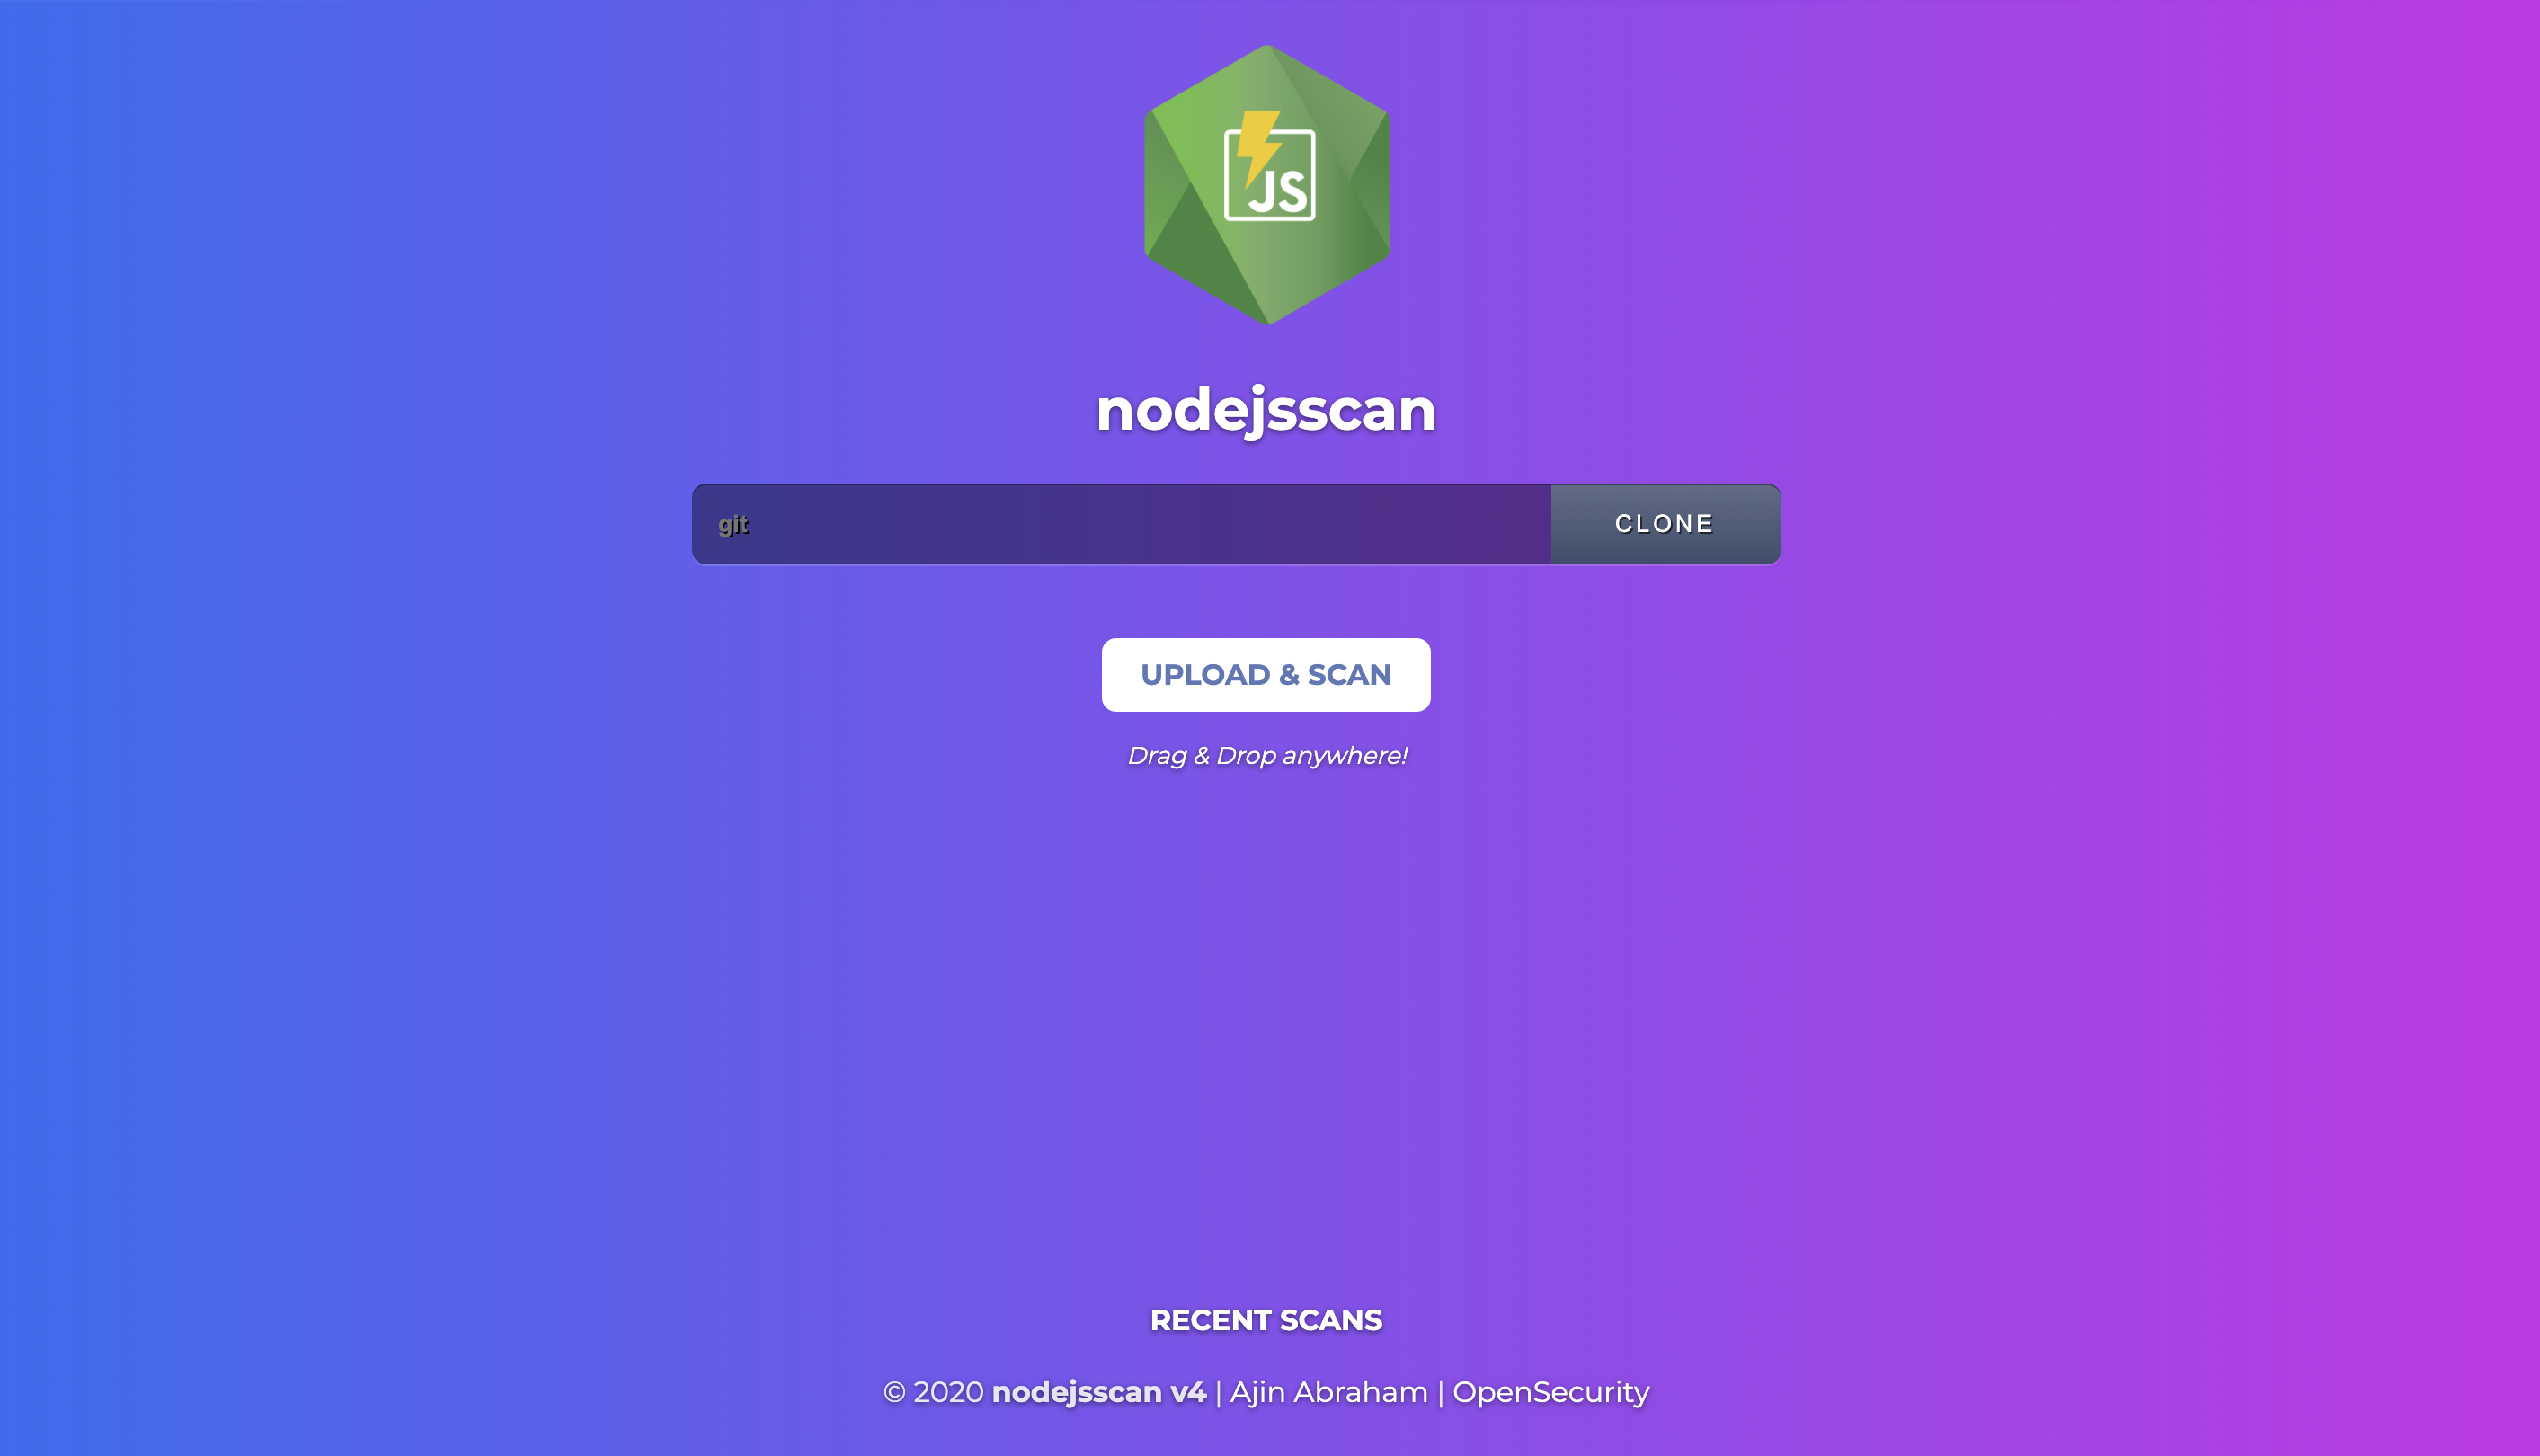 nodejsscan upload file